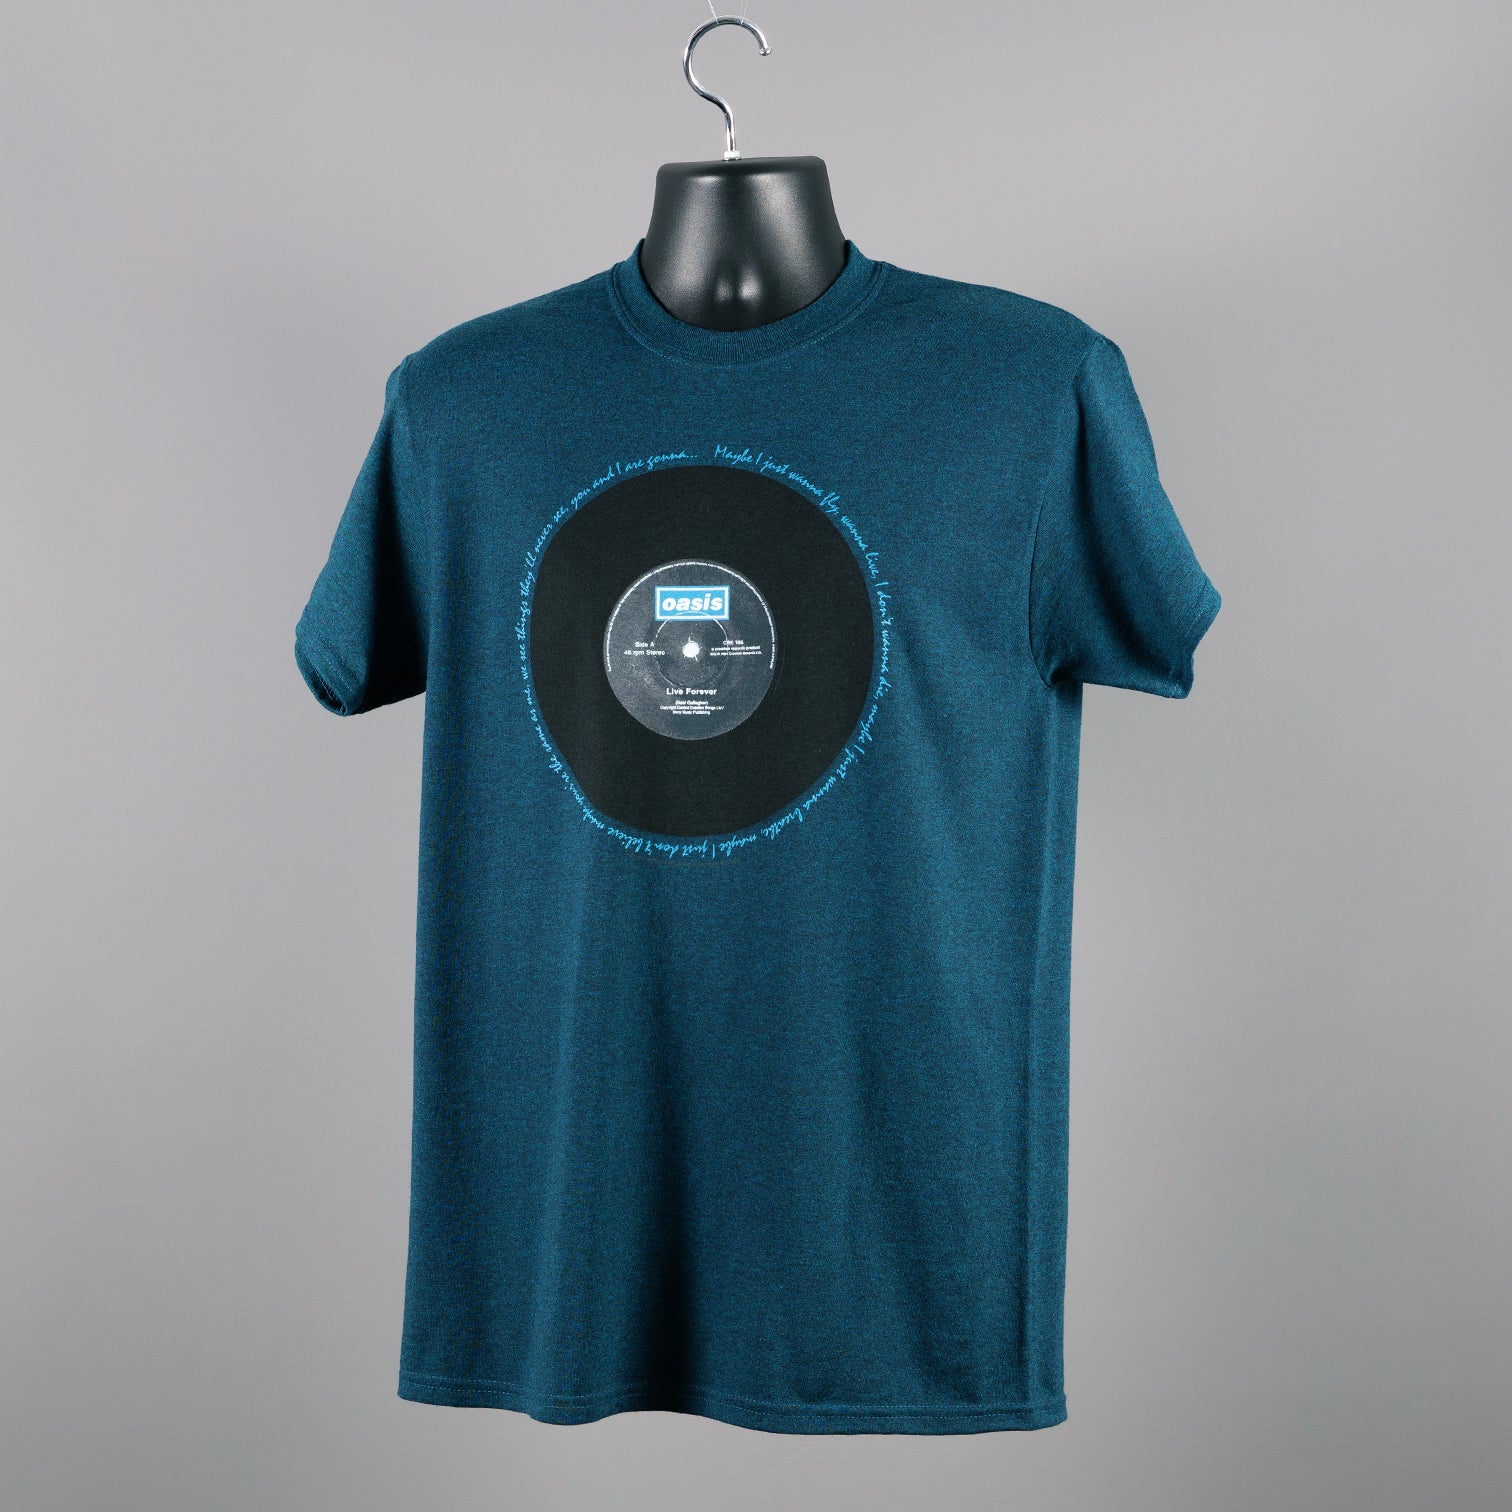 Oasis - Live Forever T Shirt - Denim Blue